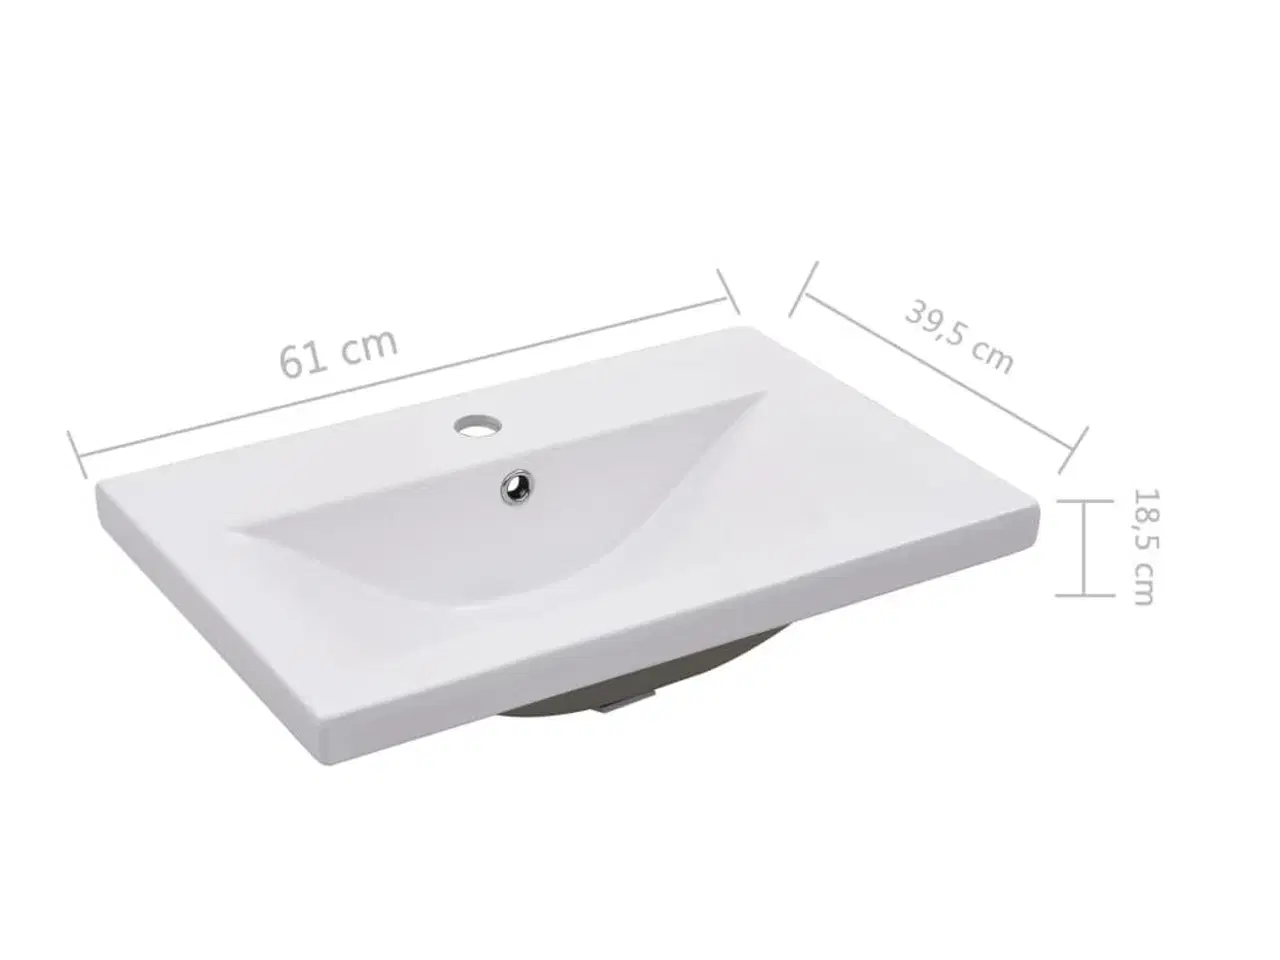 Billede 7 - Indbygget håndvask 61x39,5x18,5 cm keramisk hvid